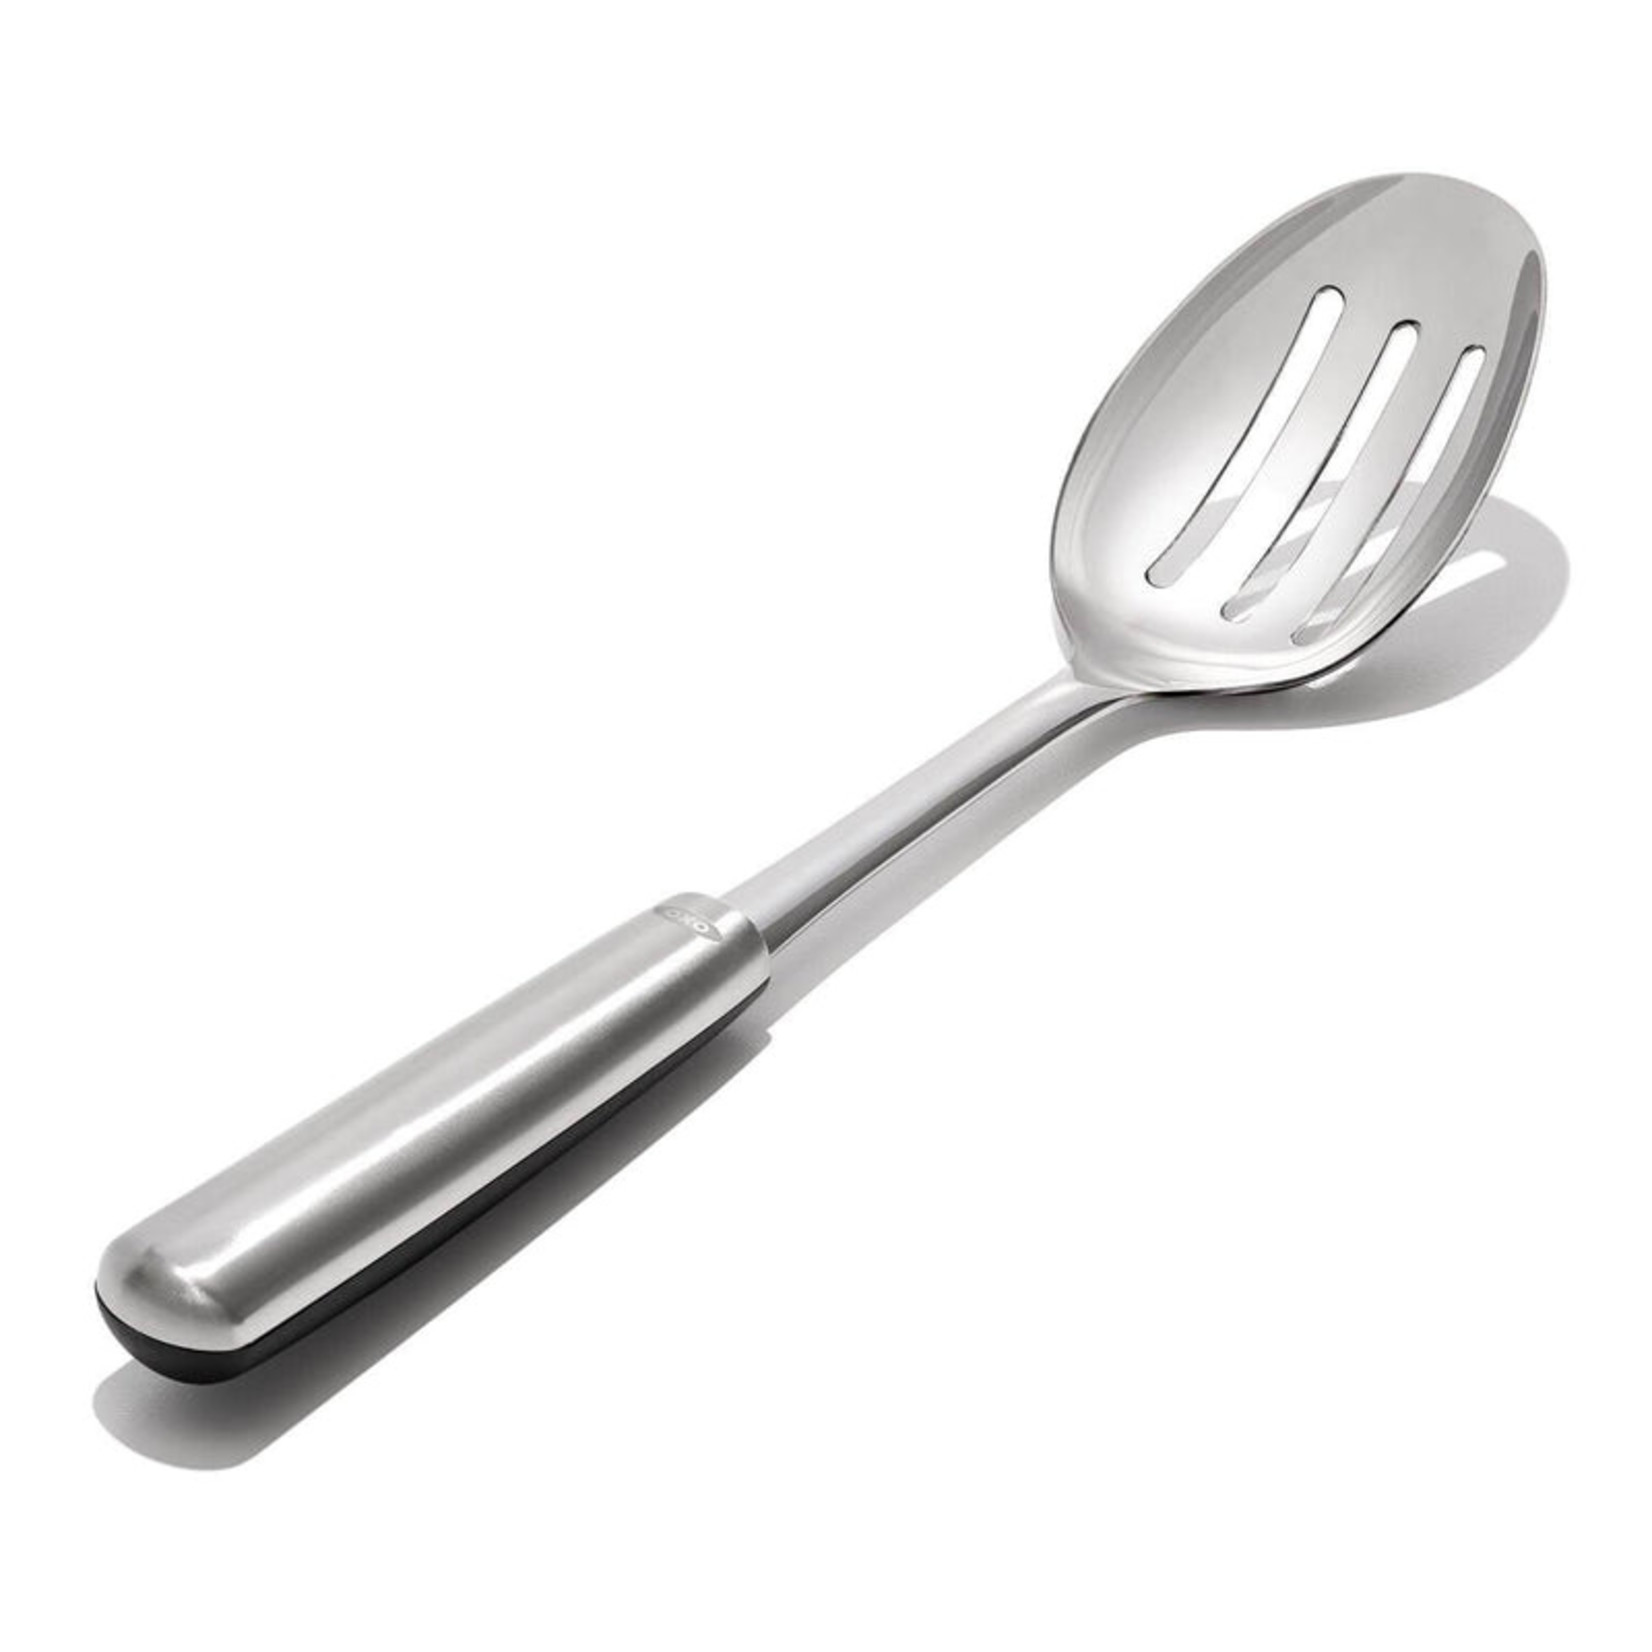 https://cdn.shoplightspeed.com/shops/627977/files/47430685/1652x1652x2/oxo22-oxo-steel-slotted-cooking-spoon.jpg